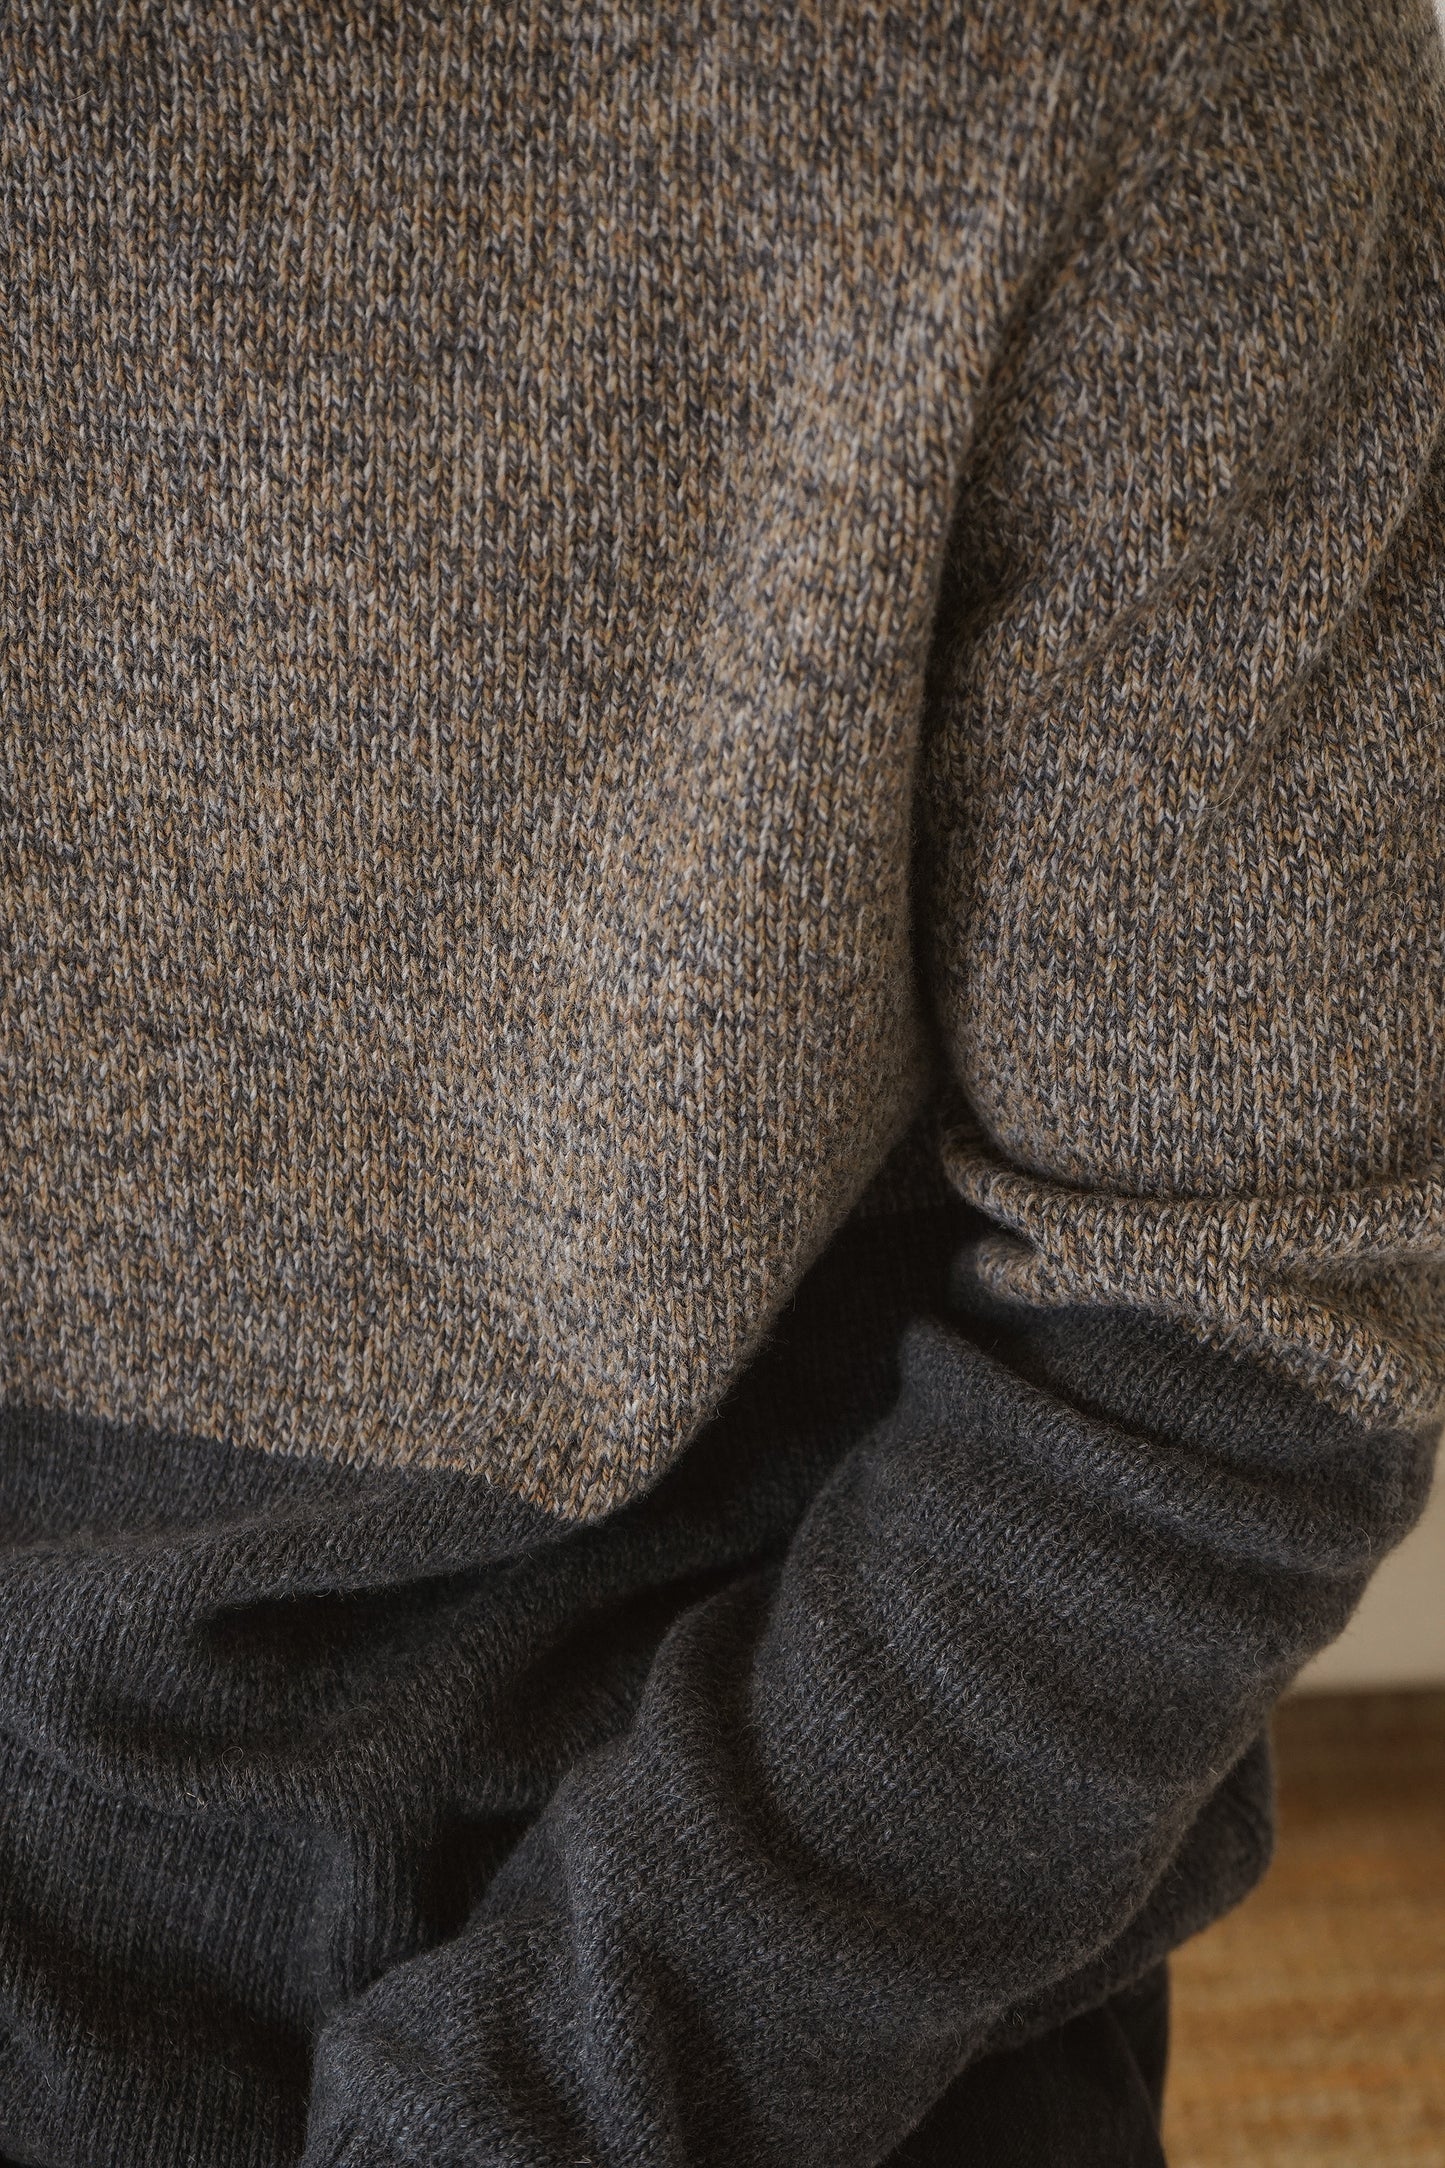 Riley-CB Colourblock Sweater